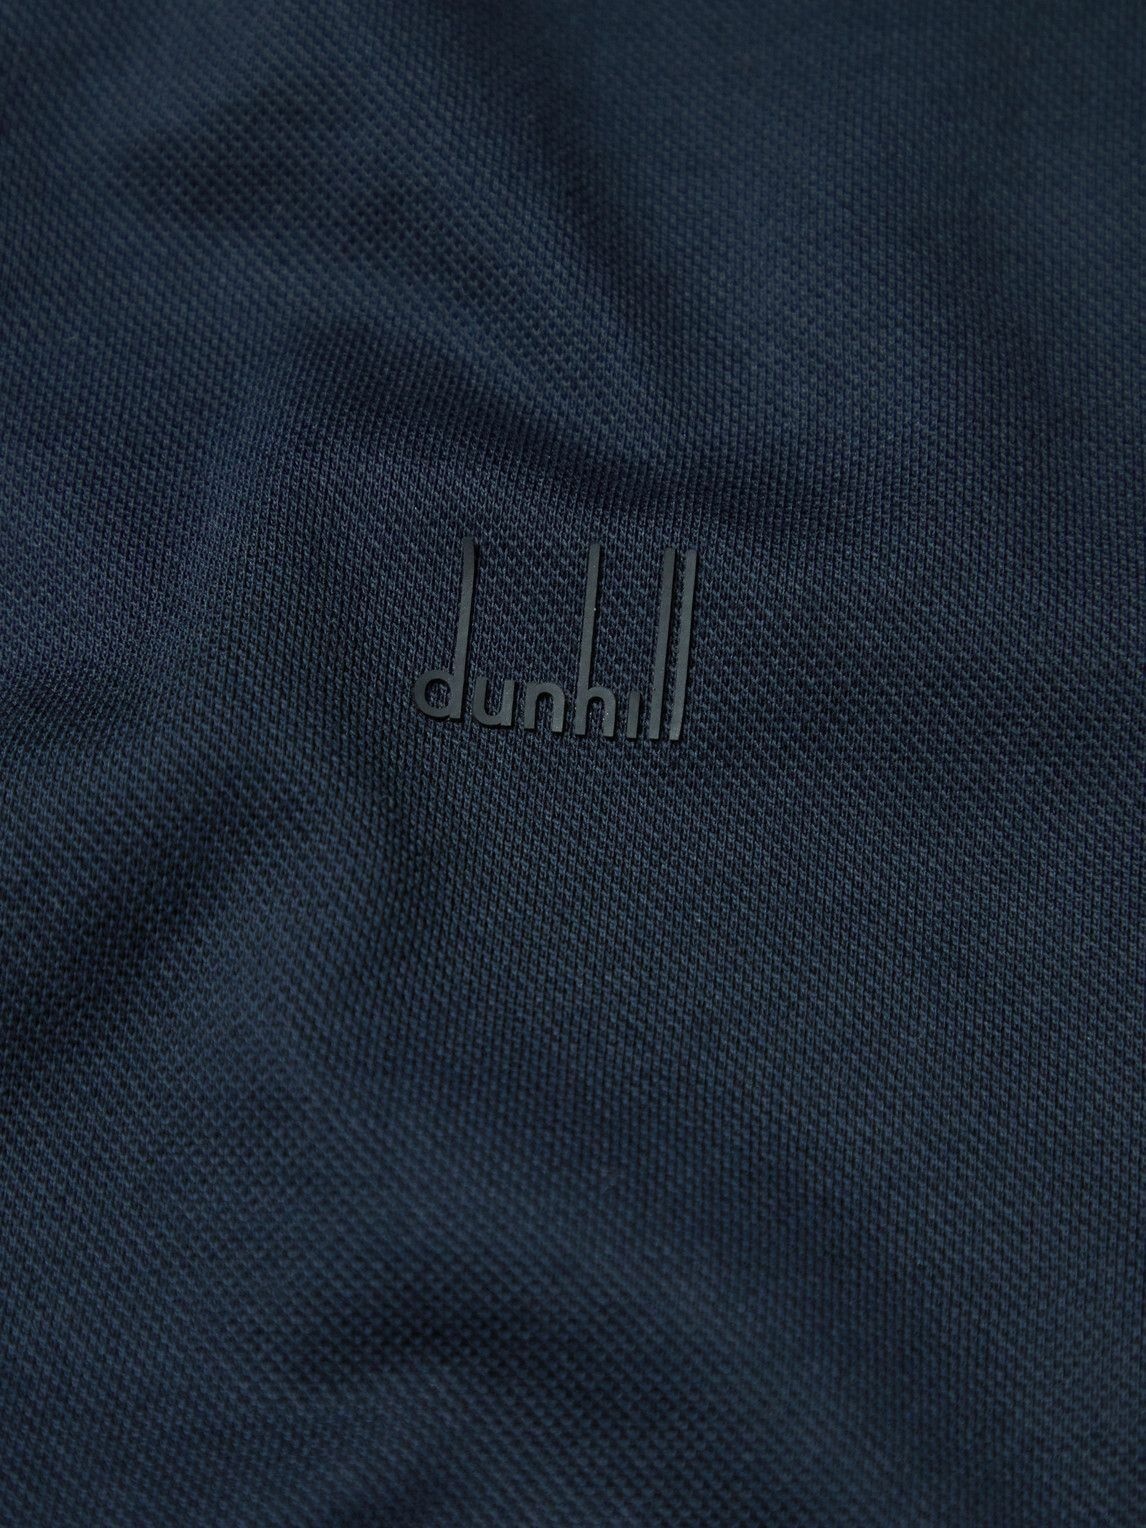 Dunhill - Cotton-Piqué Shirt - Blue Dunhill